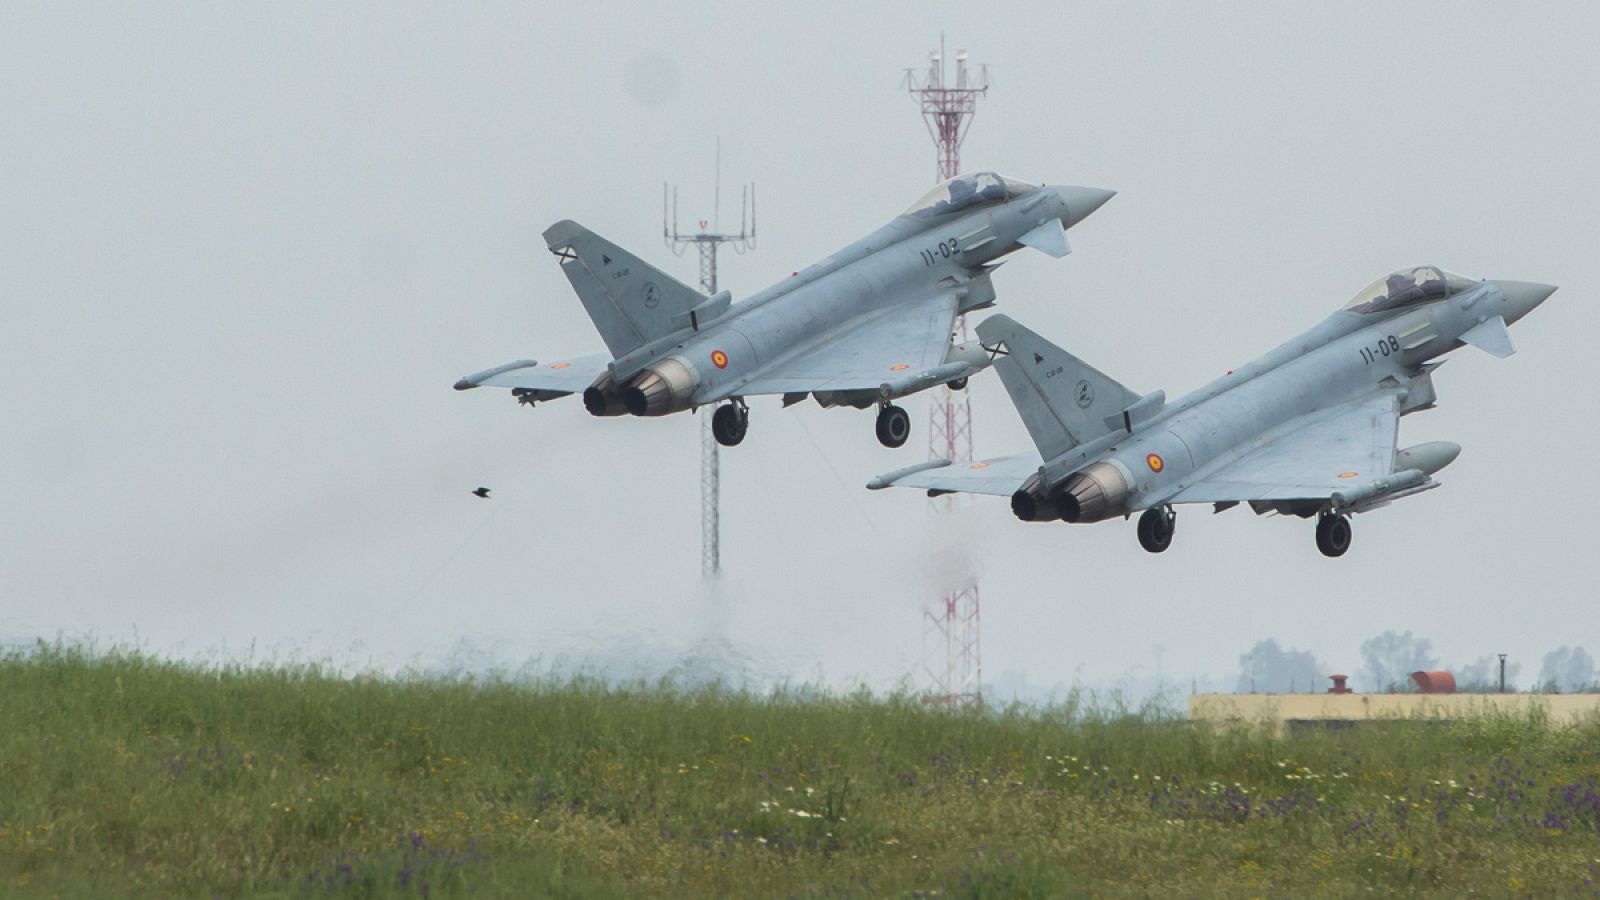 Dos Eurofighter de la base aérea de Morón, antes de partir hacia Siauliai (Lituania), para participar en la misión de Policía Aérea del Báltico (BAP).